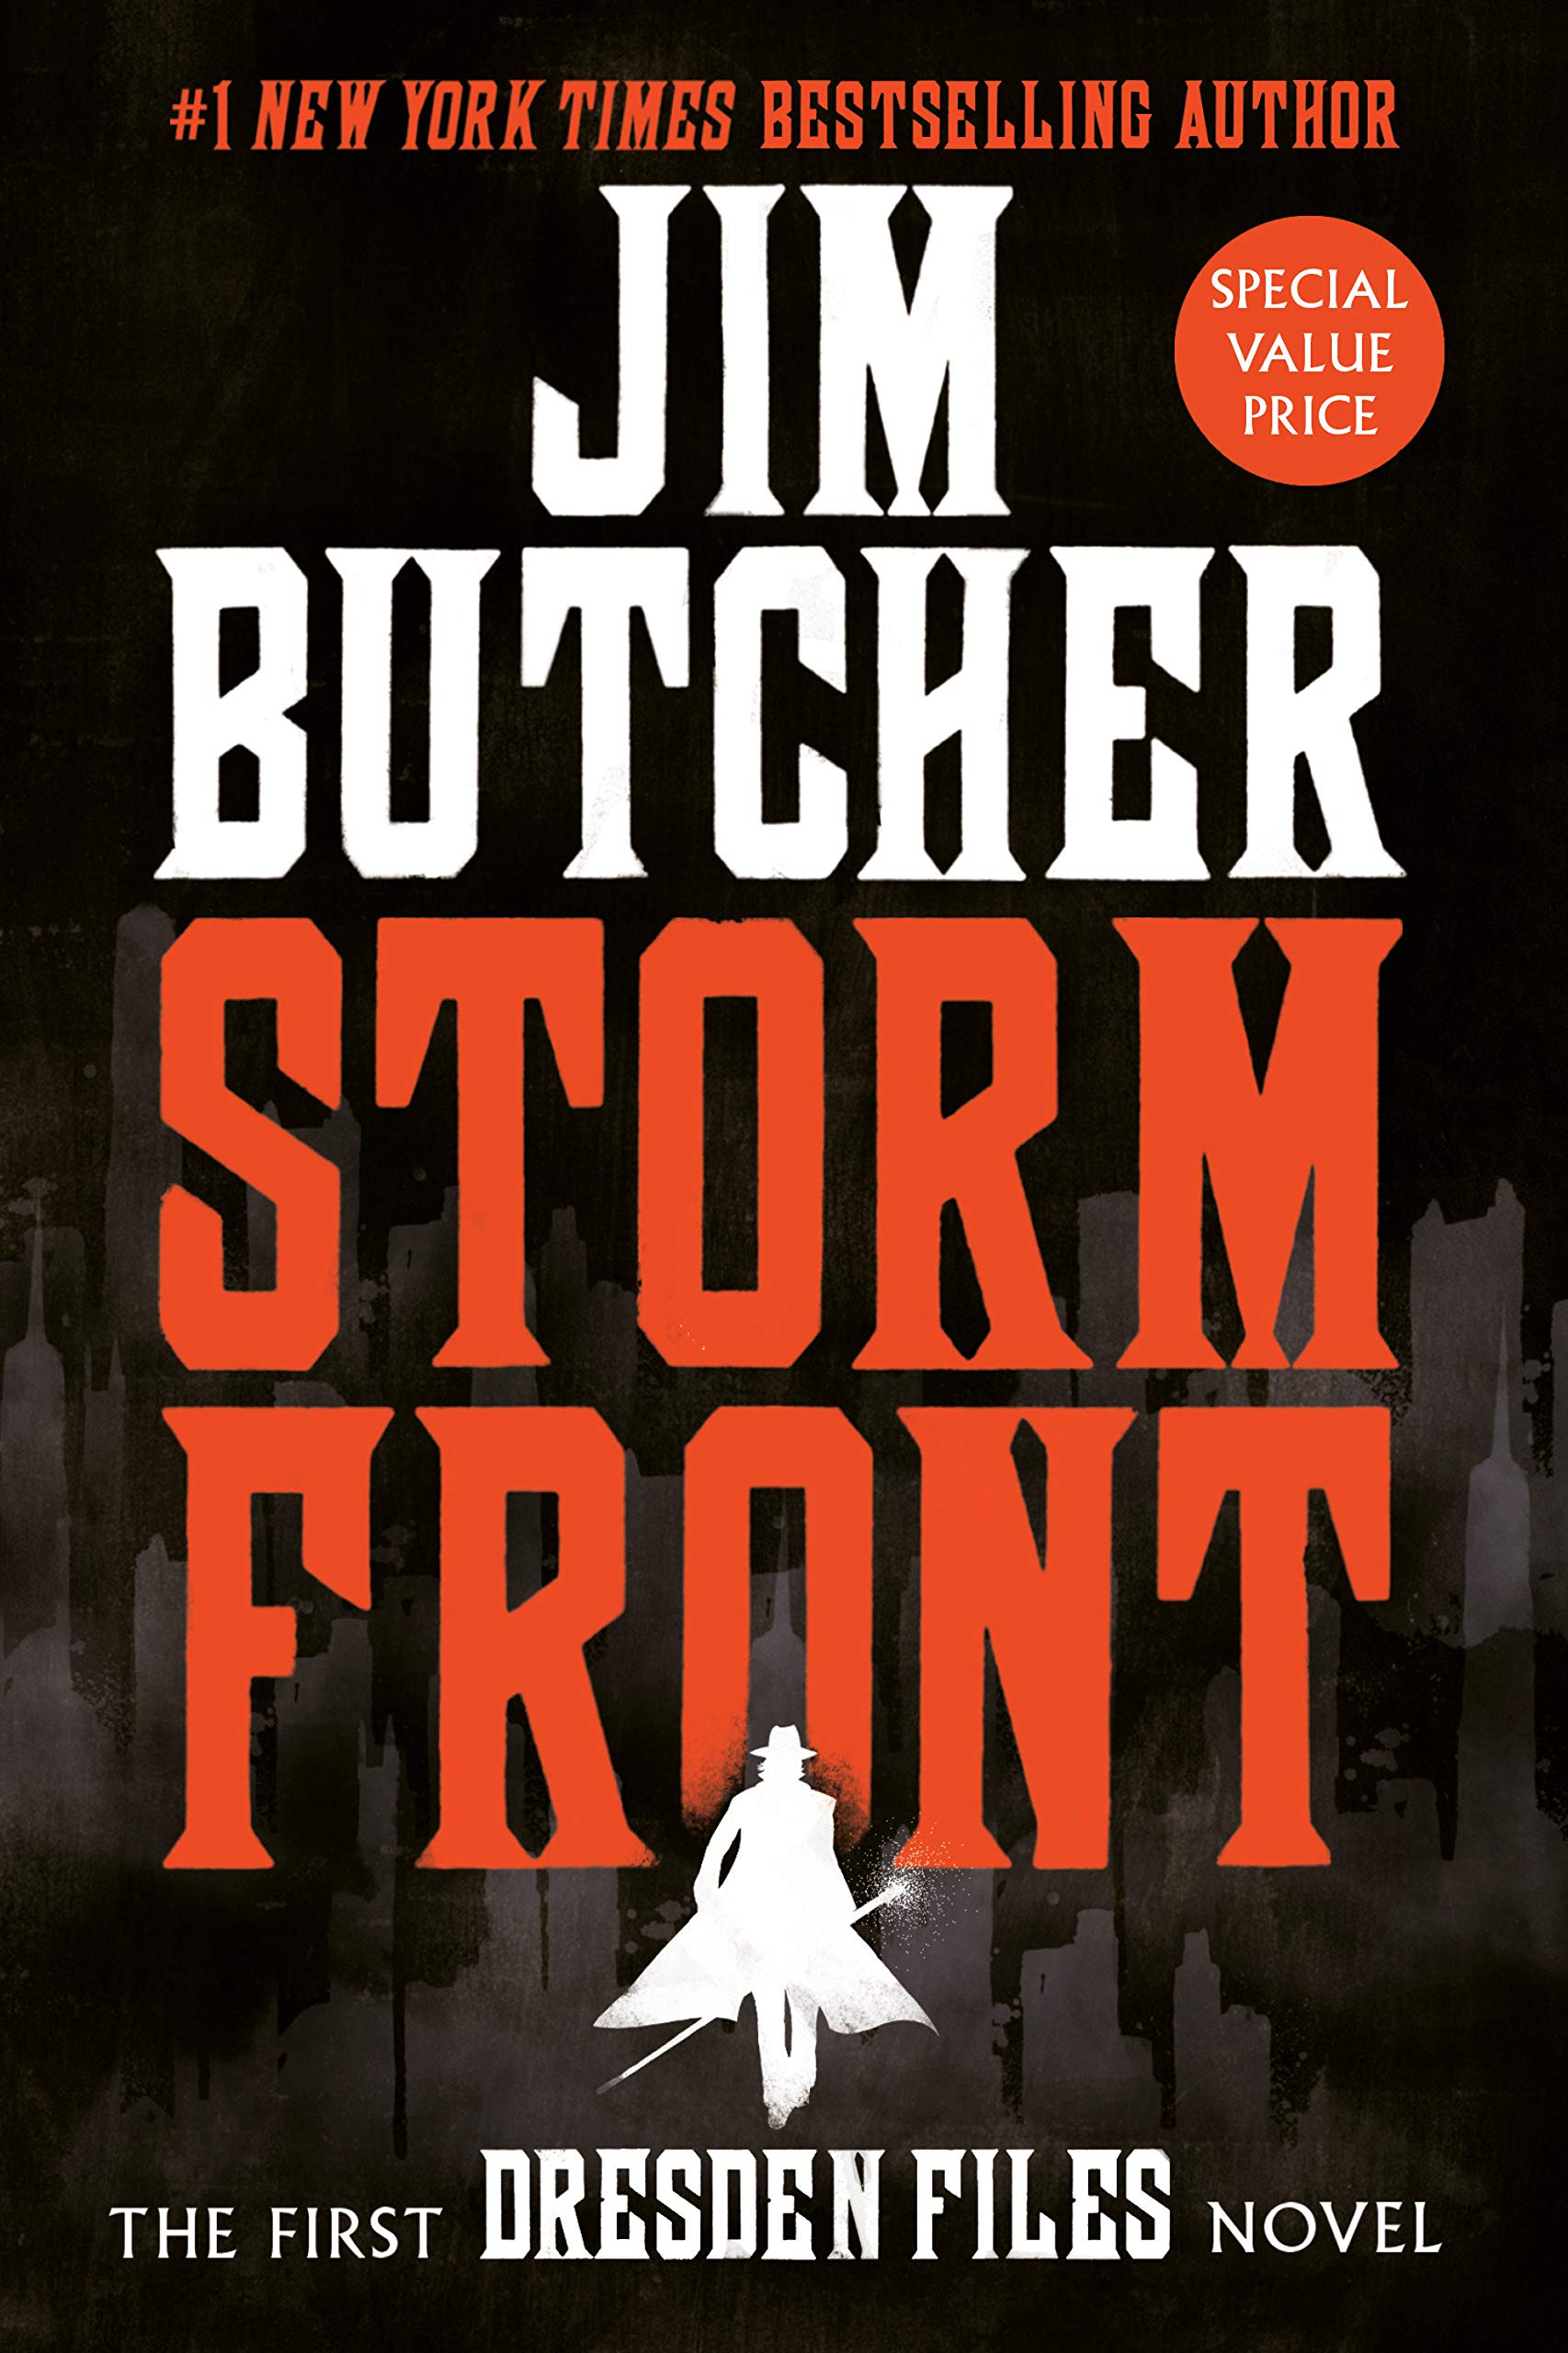 Storm Front - Jim Butcher